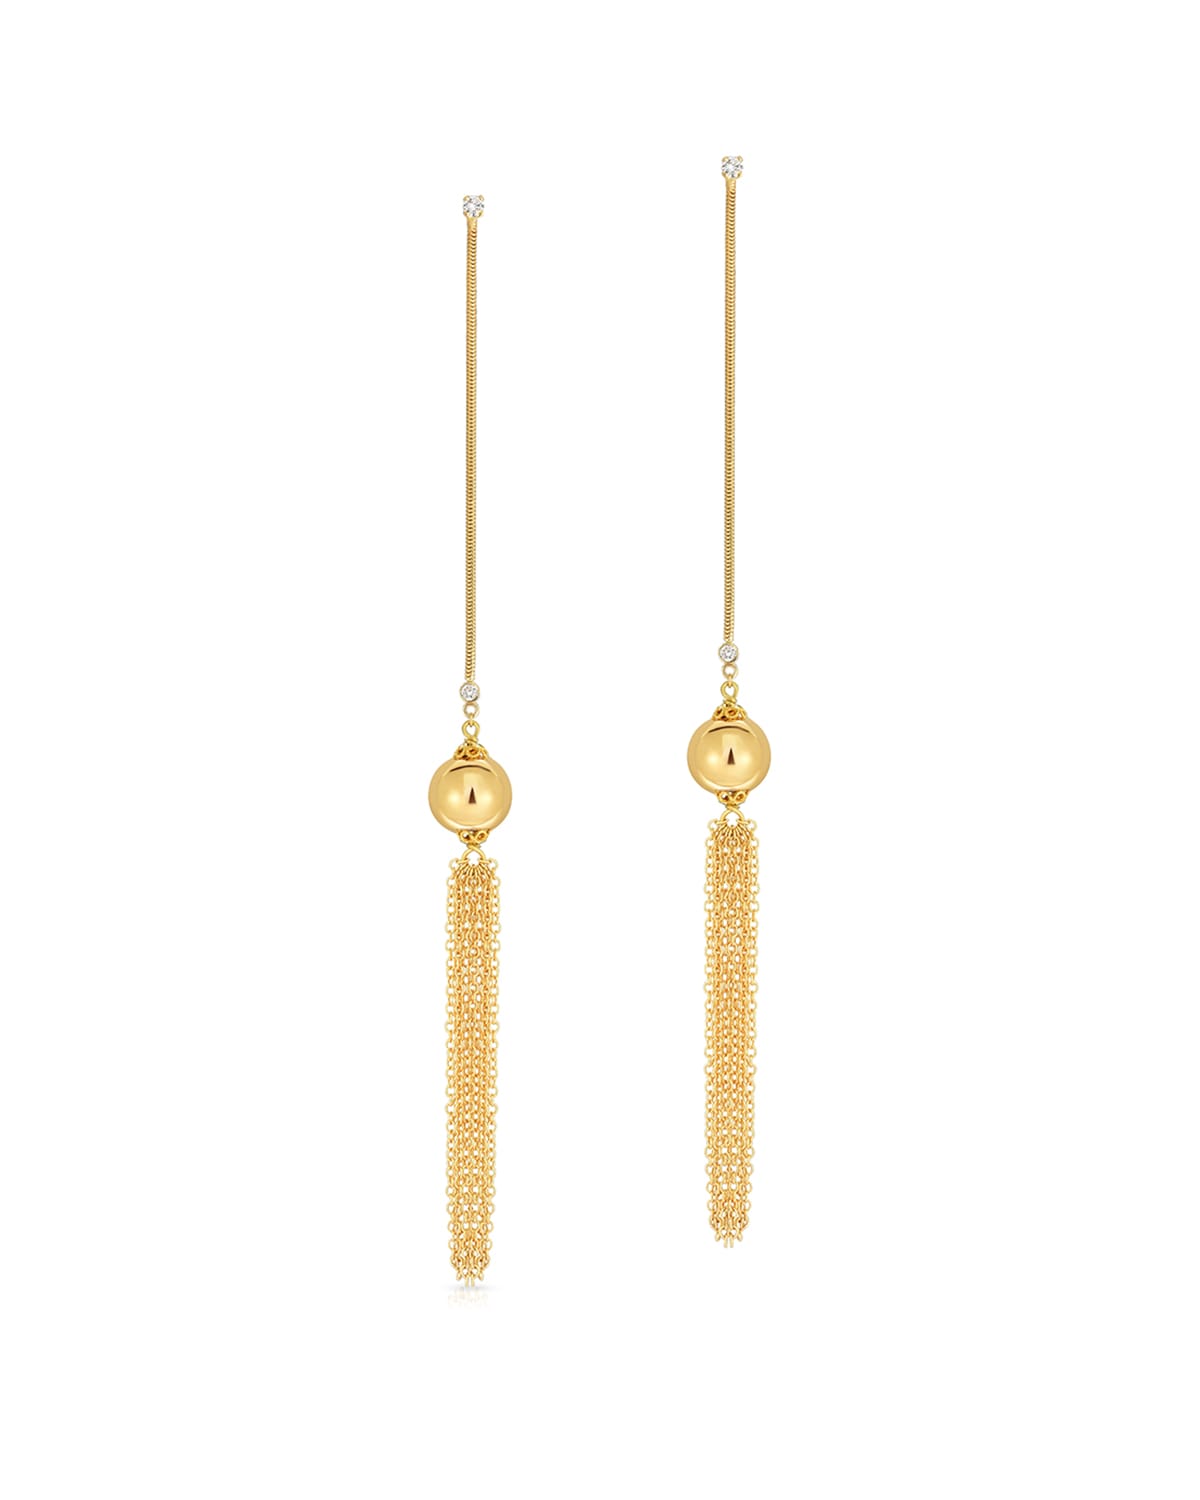 Fern Freeman Jewelry 18K Diamond & Yellow Gold Ball Drop Fringe Earrings